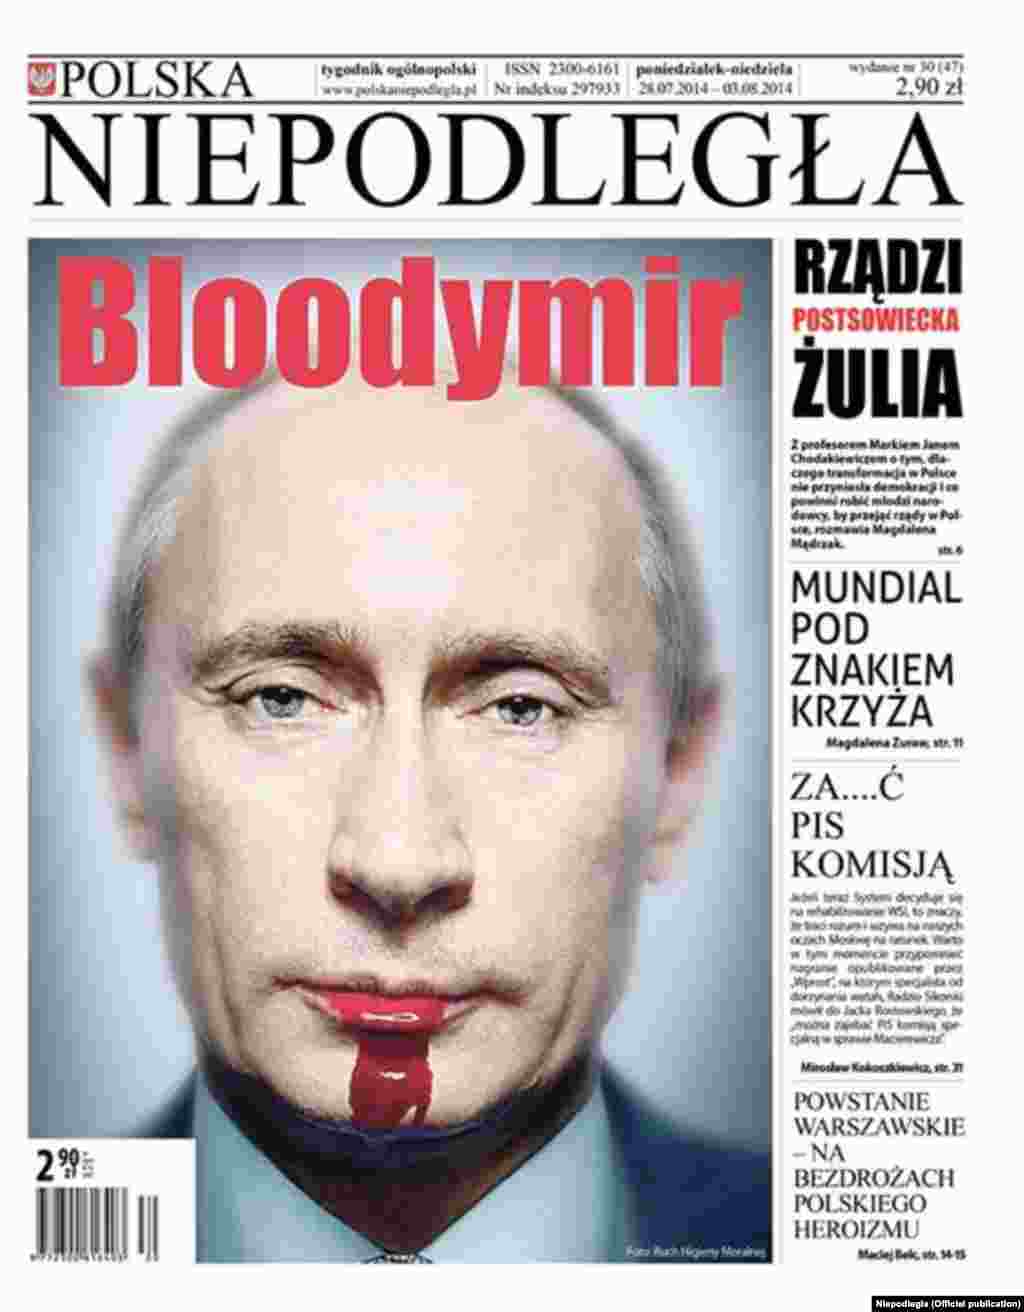 პოლონეთის ყოველკვირეული &quot;ნიეპოდლეგლა&quot; 28 ივლისის ნომერში რუსეთის ლიდერს &quot;ბლადიმირს&quot; უწოდებს. ინგლისური სიტყვა &quot;ბლად&quot; (blood) სისხლს ნიშნავს.